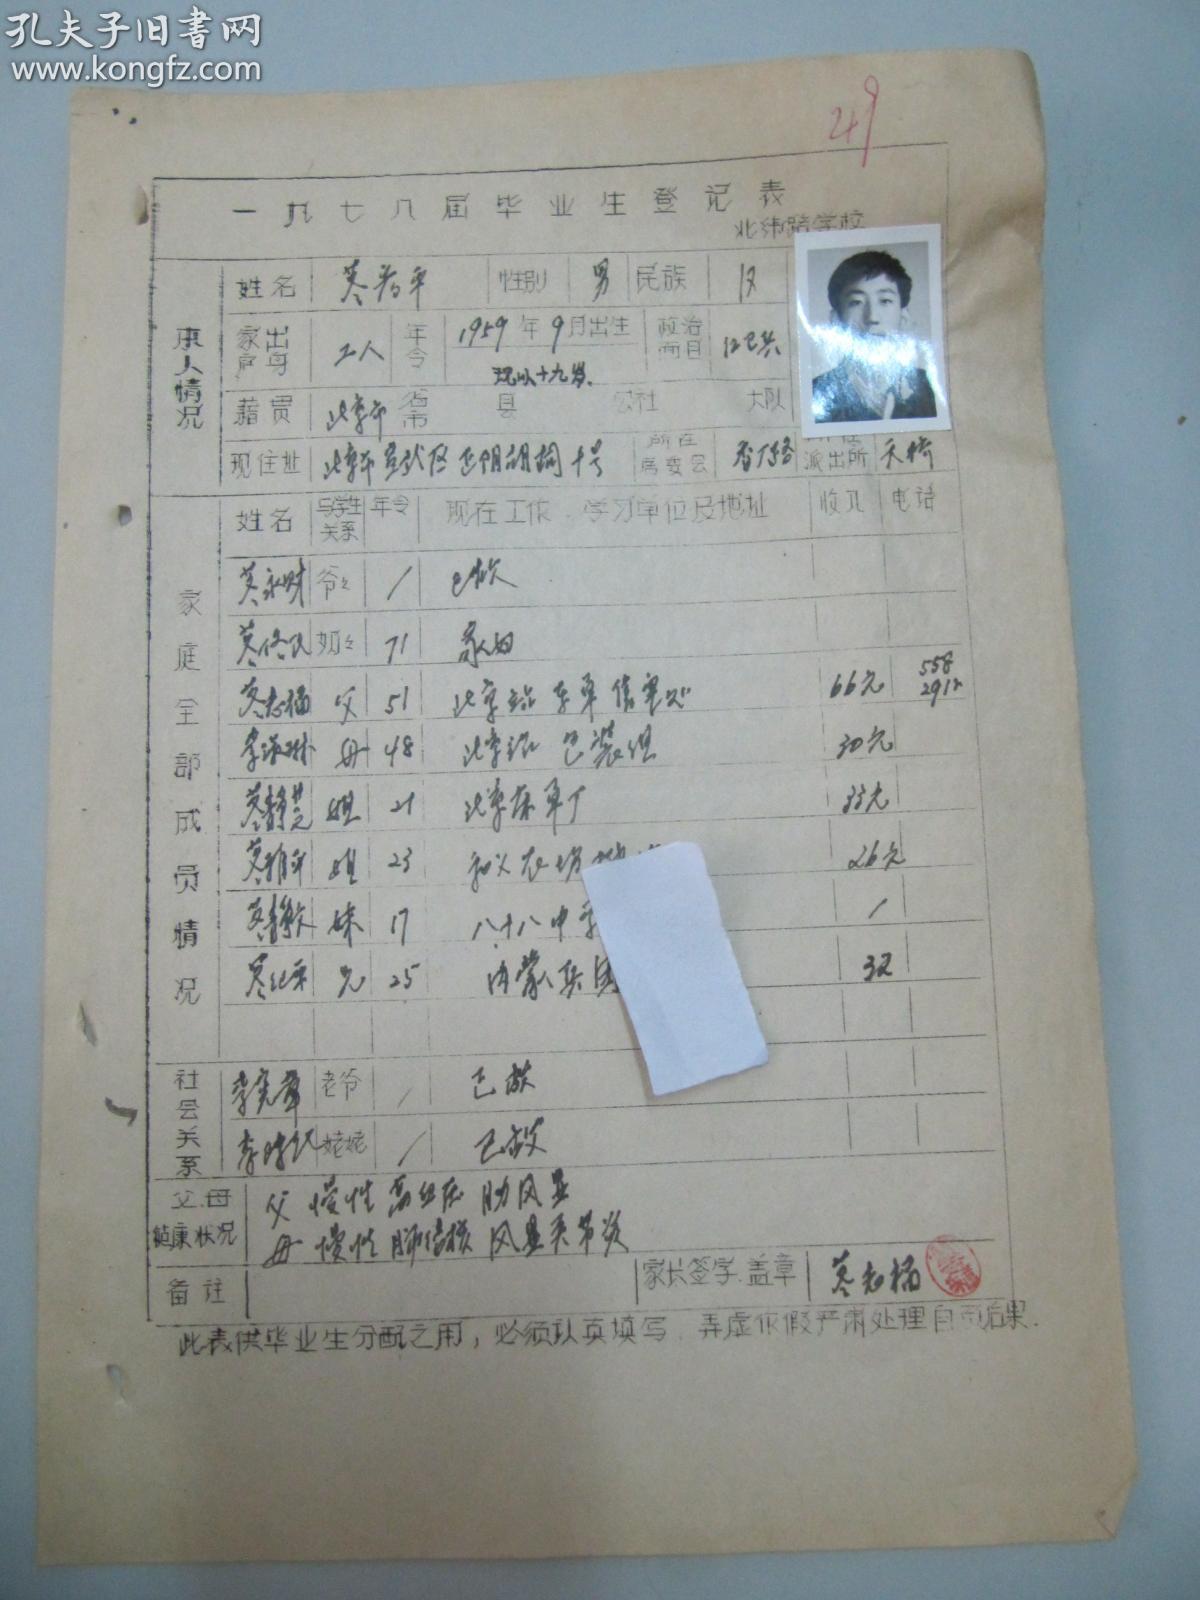 1978年北京北纬路学校 手填毕业生登记表一张 附照片